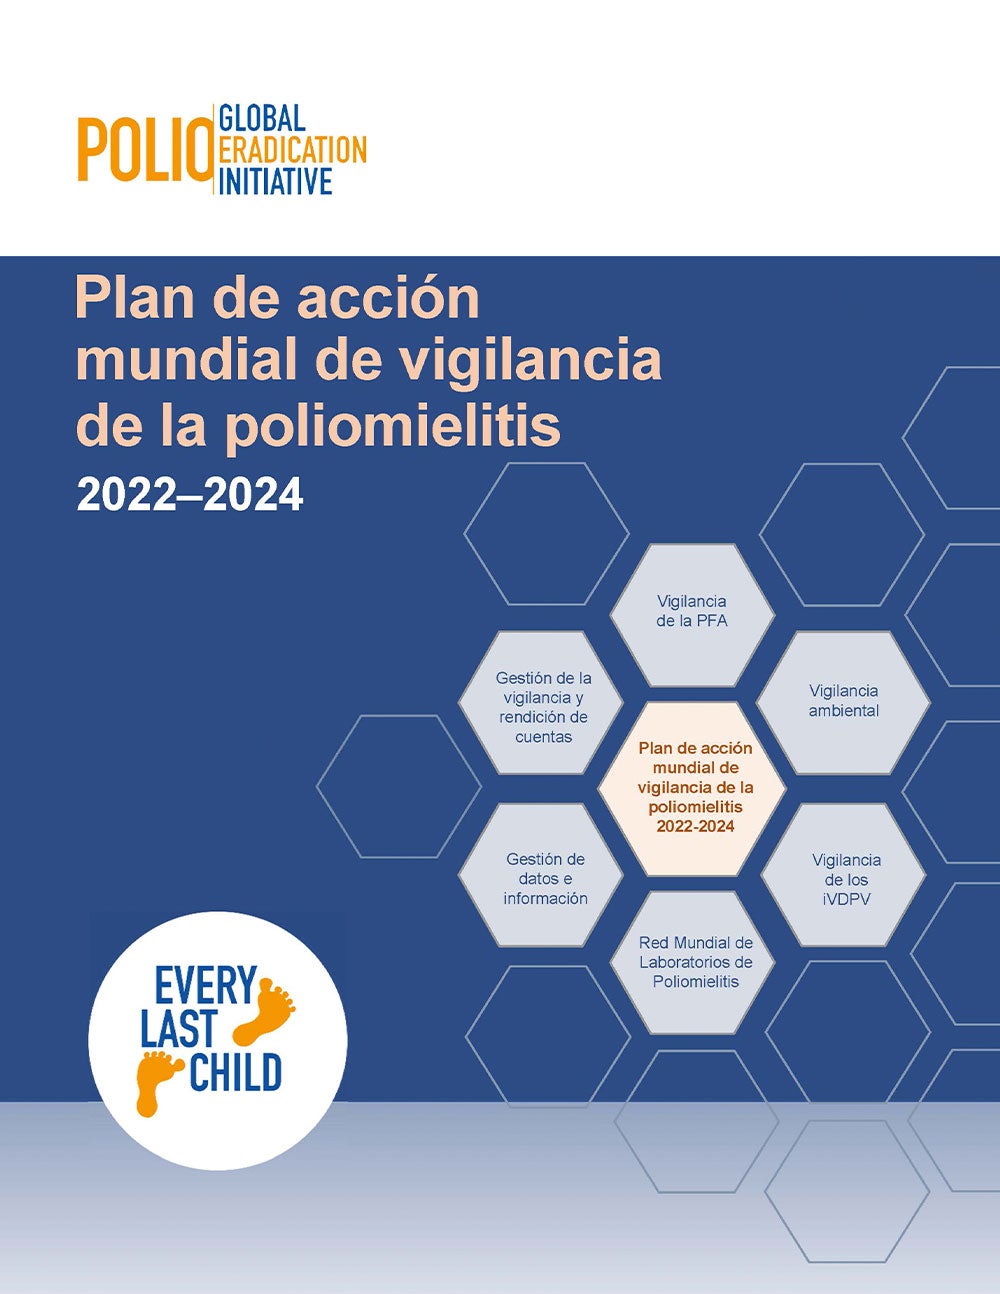 Plan de acción mundial de vigilancia de la poliomielitis 2022-2024